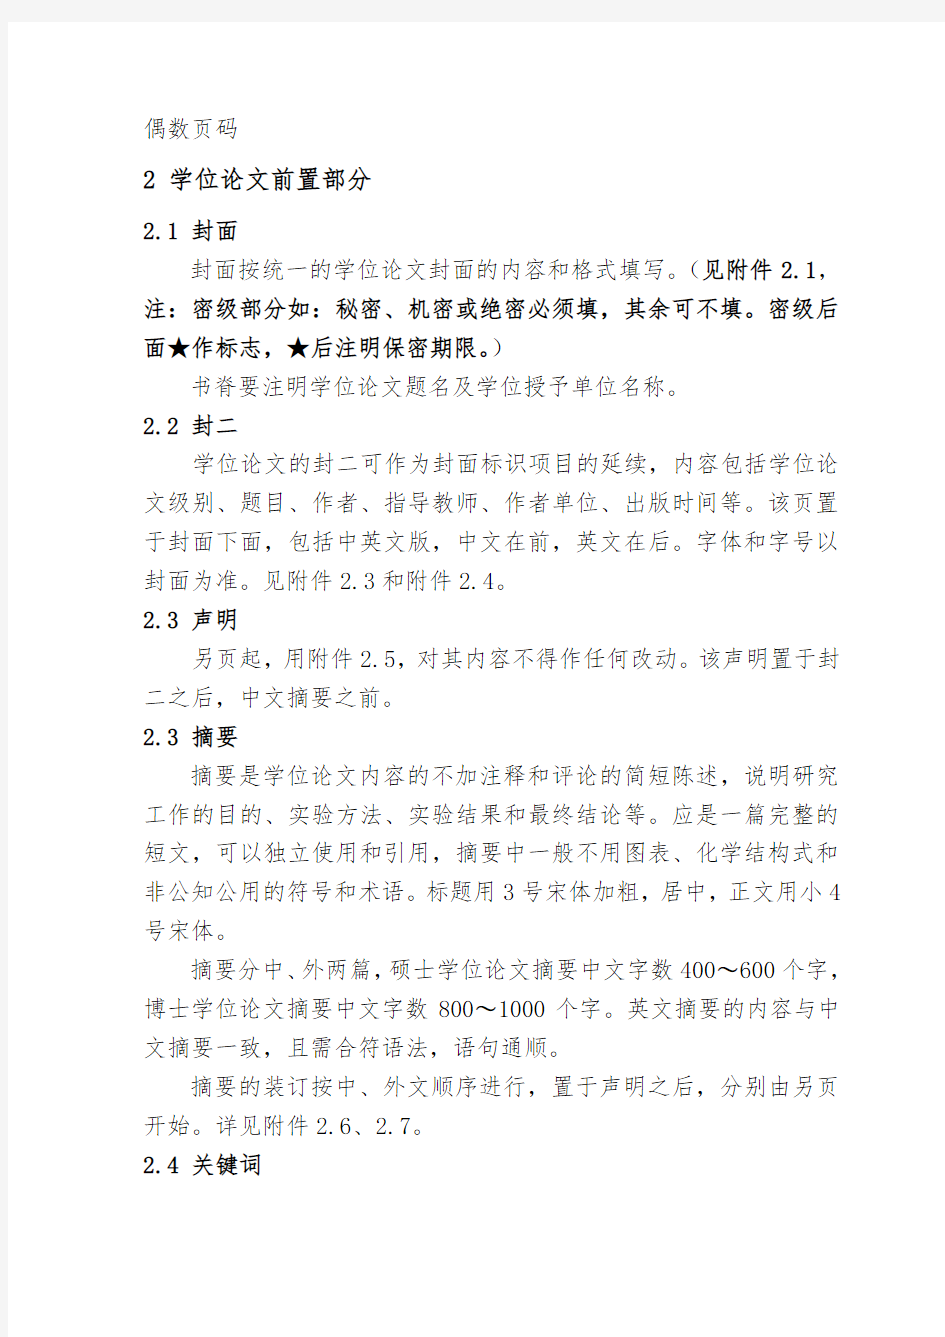 南京理工大学博士、硕士学位论文撰写格式(2014版)